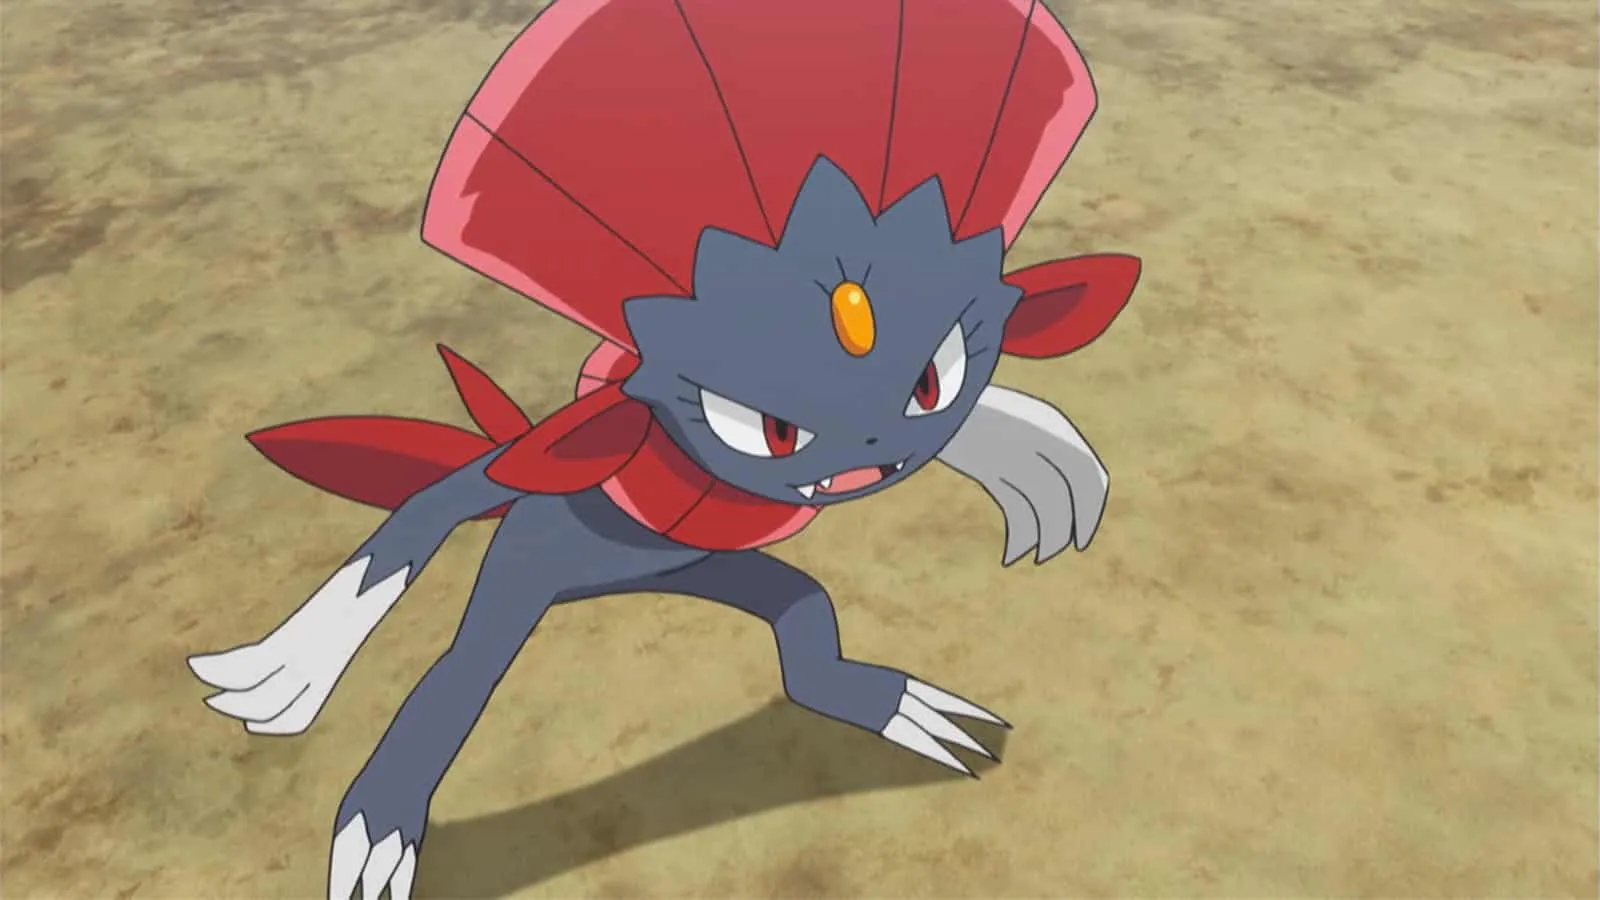 Weavile aparecendo no anime Pokémon